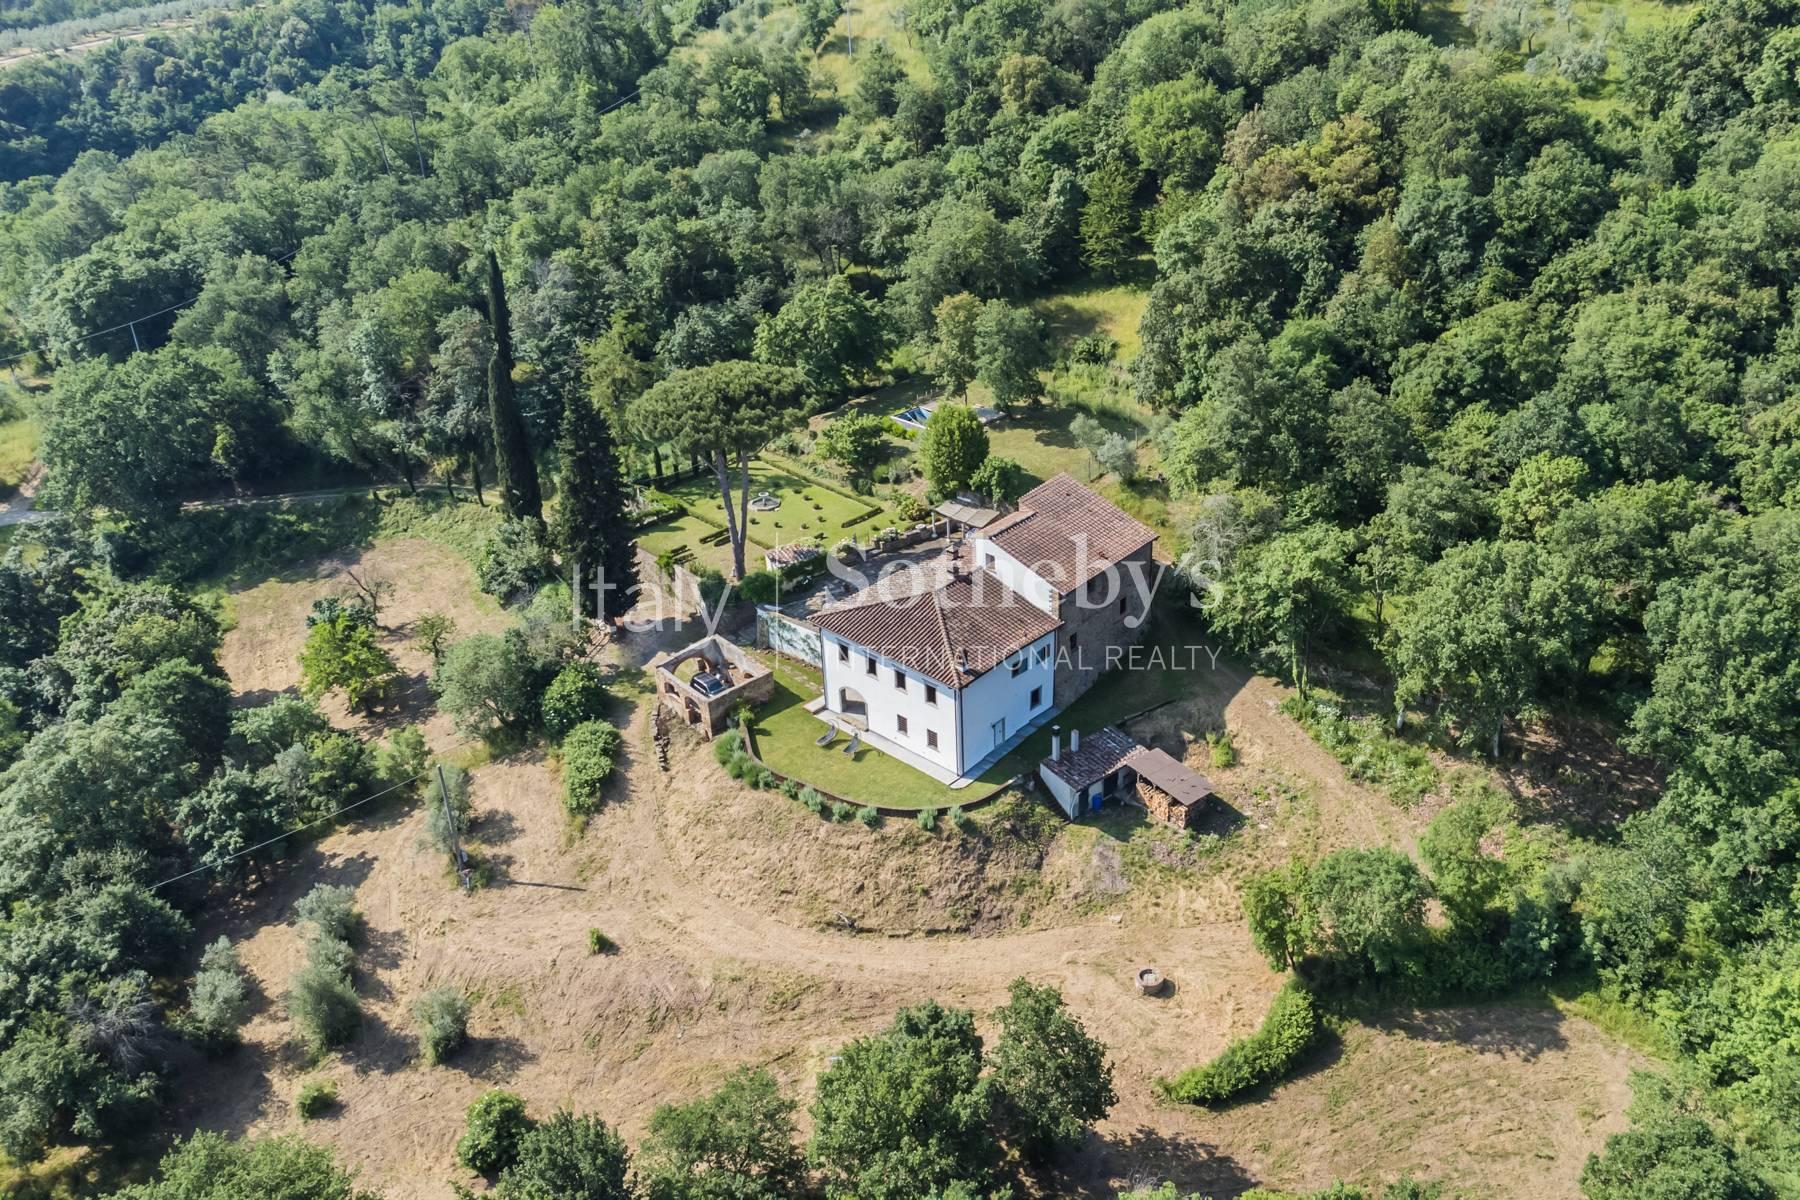 Panoramica villa rinascimentale con giardino all' italiana - 31